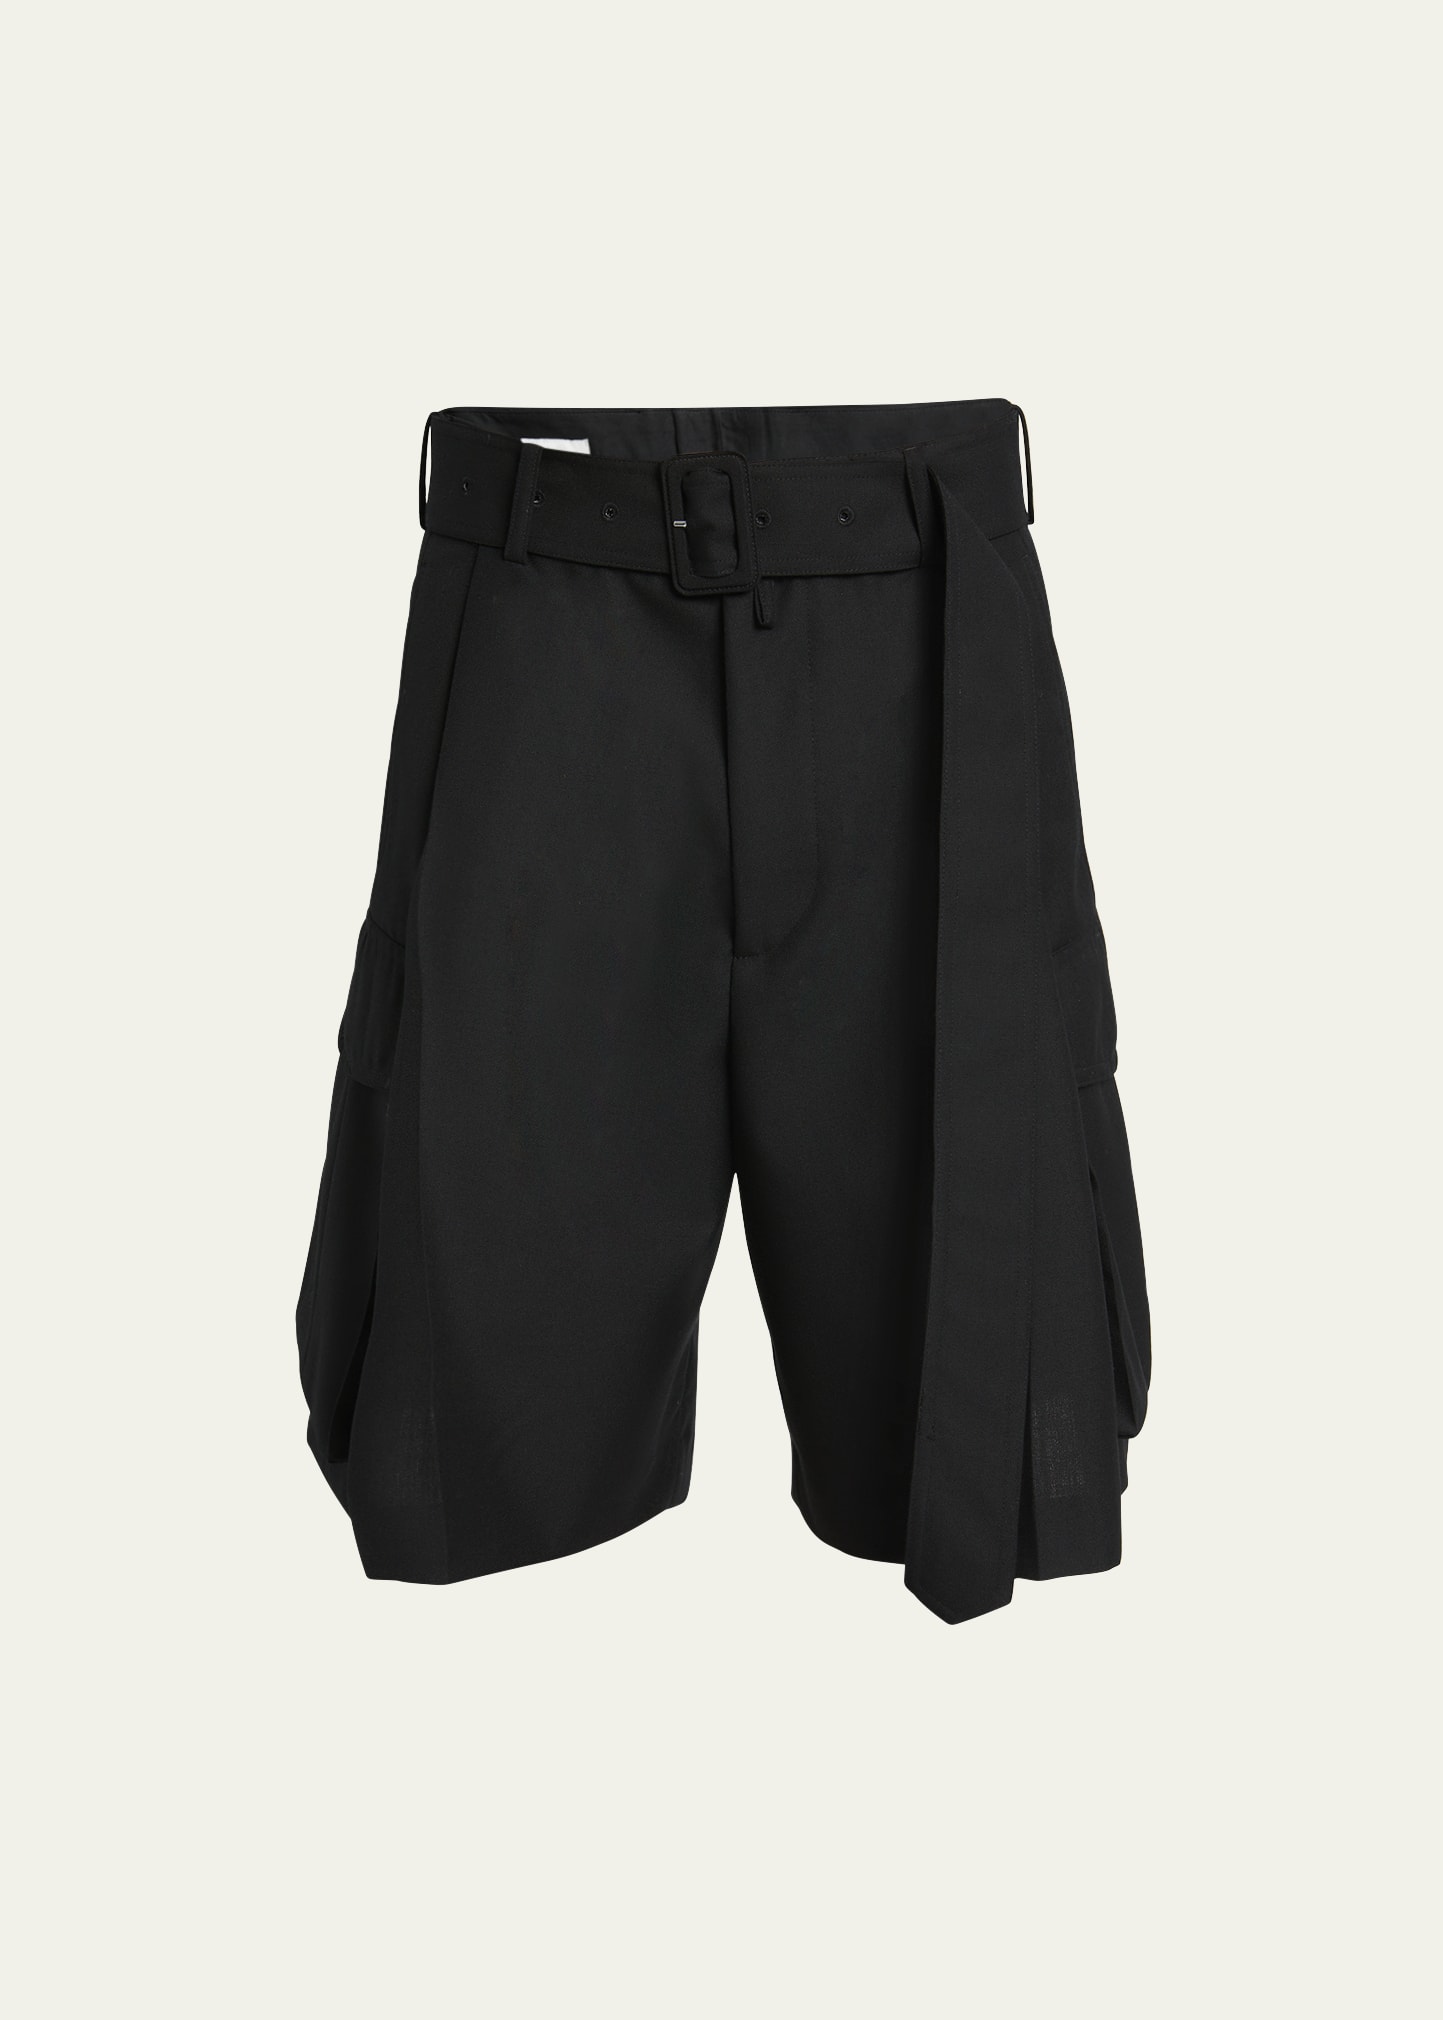 Dries Van Noten Men's Wool Toile Belted Cargo Shorts In 900 - Black